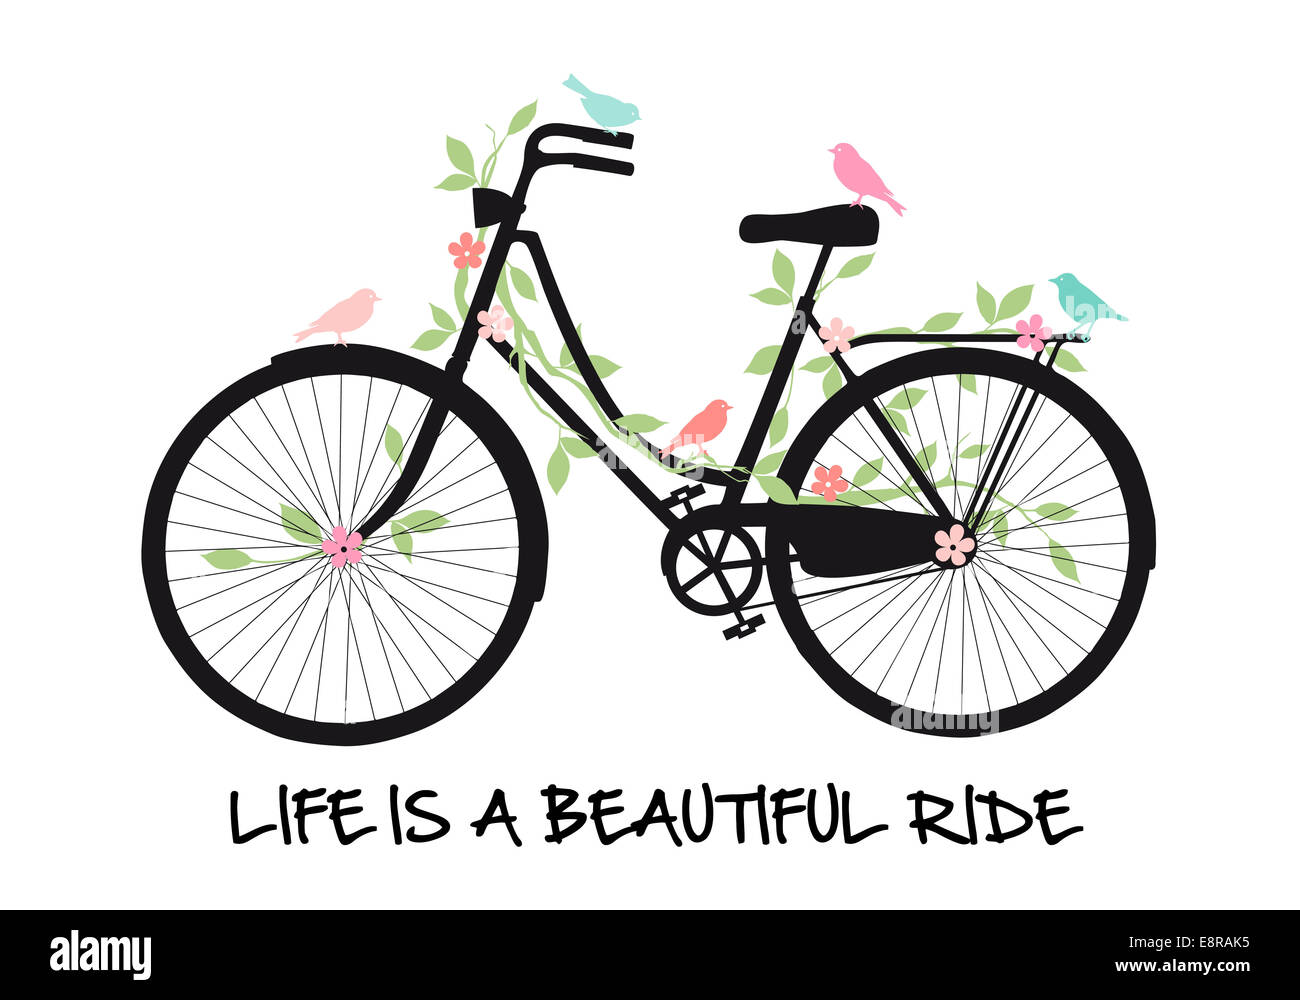 Vintage bicicleta con pájaros y flores, la vida es un hermoso paseo, ilustración vectorial Foto de stock